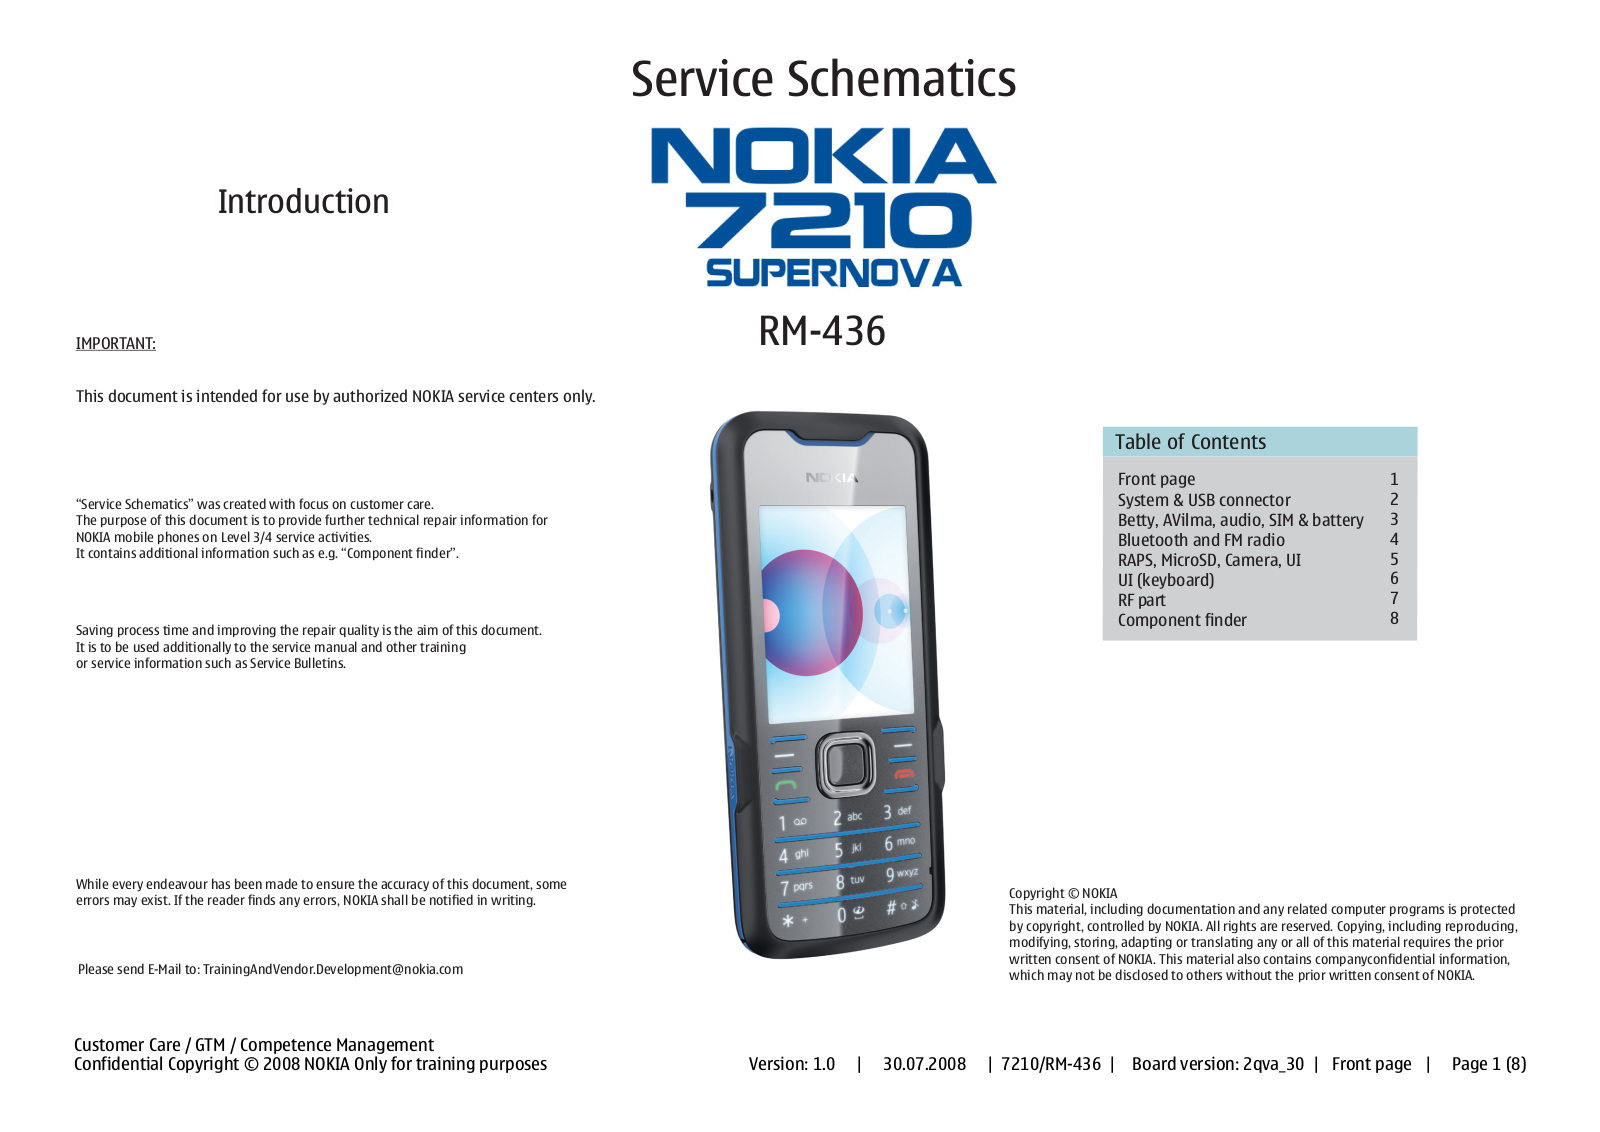 Nokia 7210 supernova RM-436 Schematic